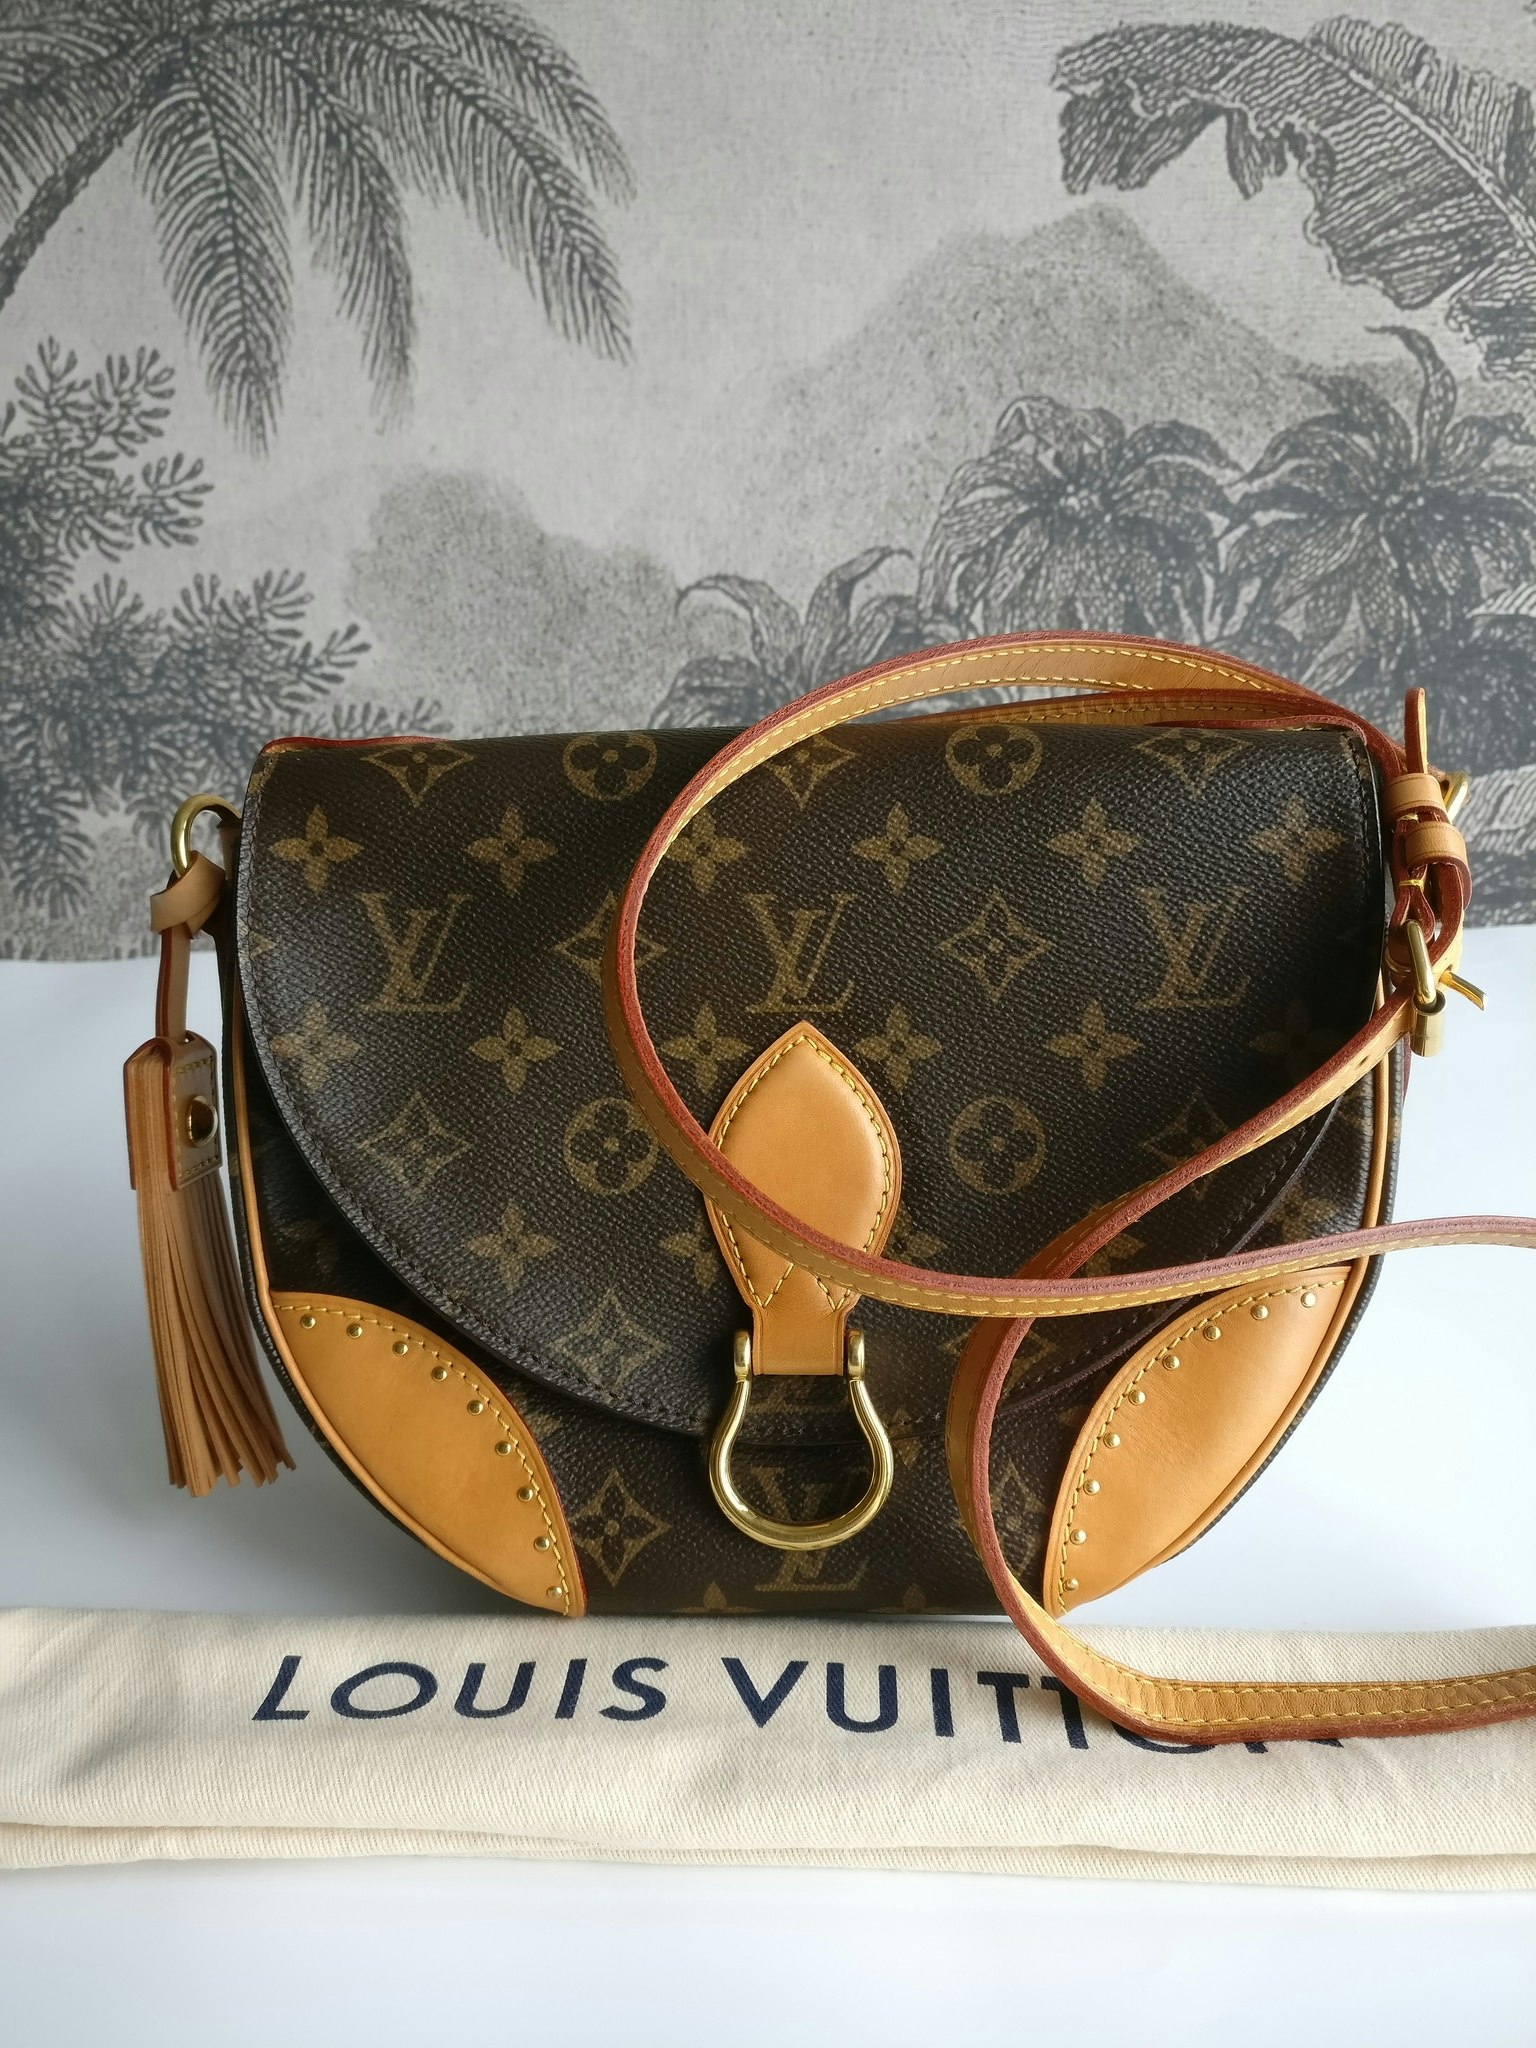 Louis Vuitton Saint Cloud new model - Good or Bag